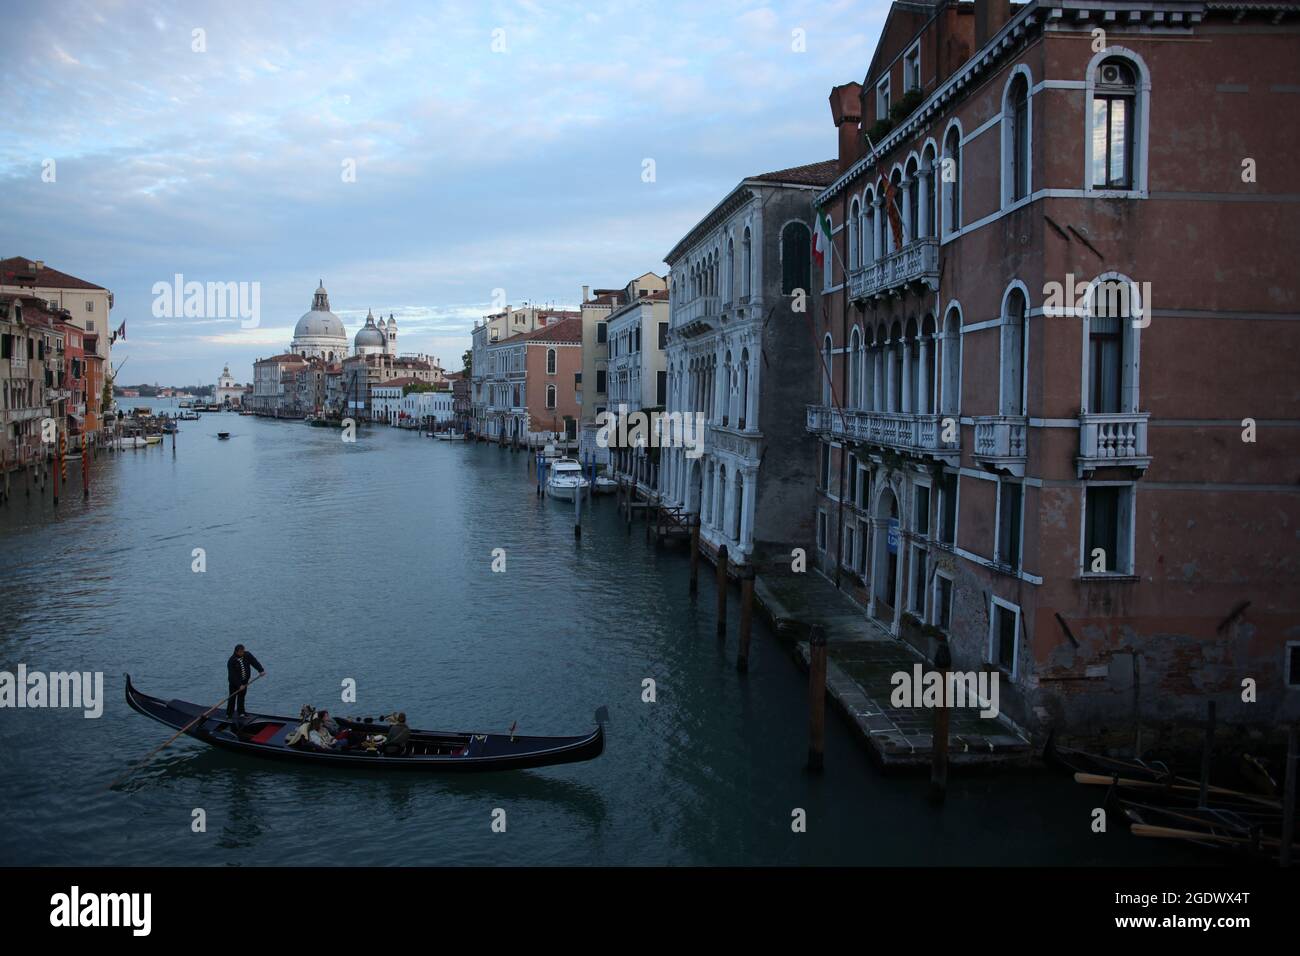 Vista del Gran Canal de Venecia, Italia, 13 de noviembre de 2013 Foto de stock